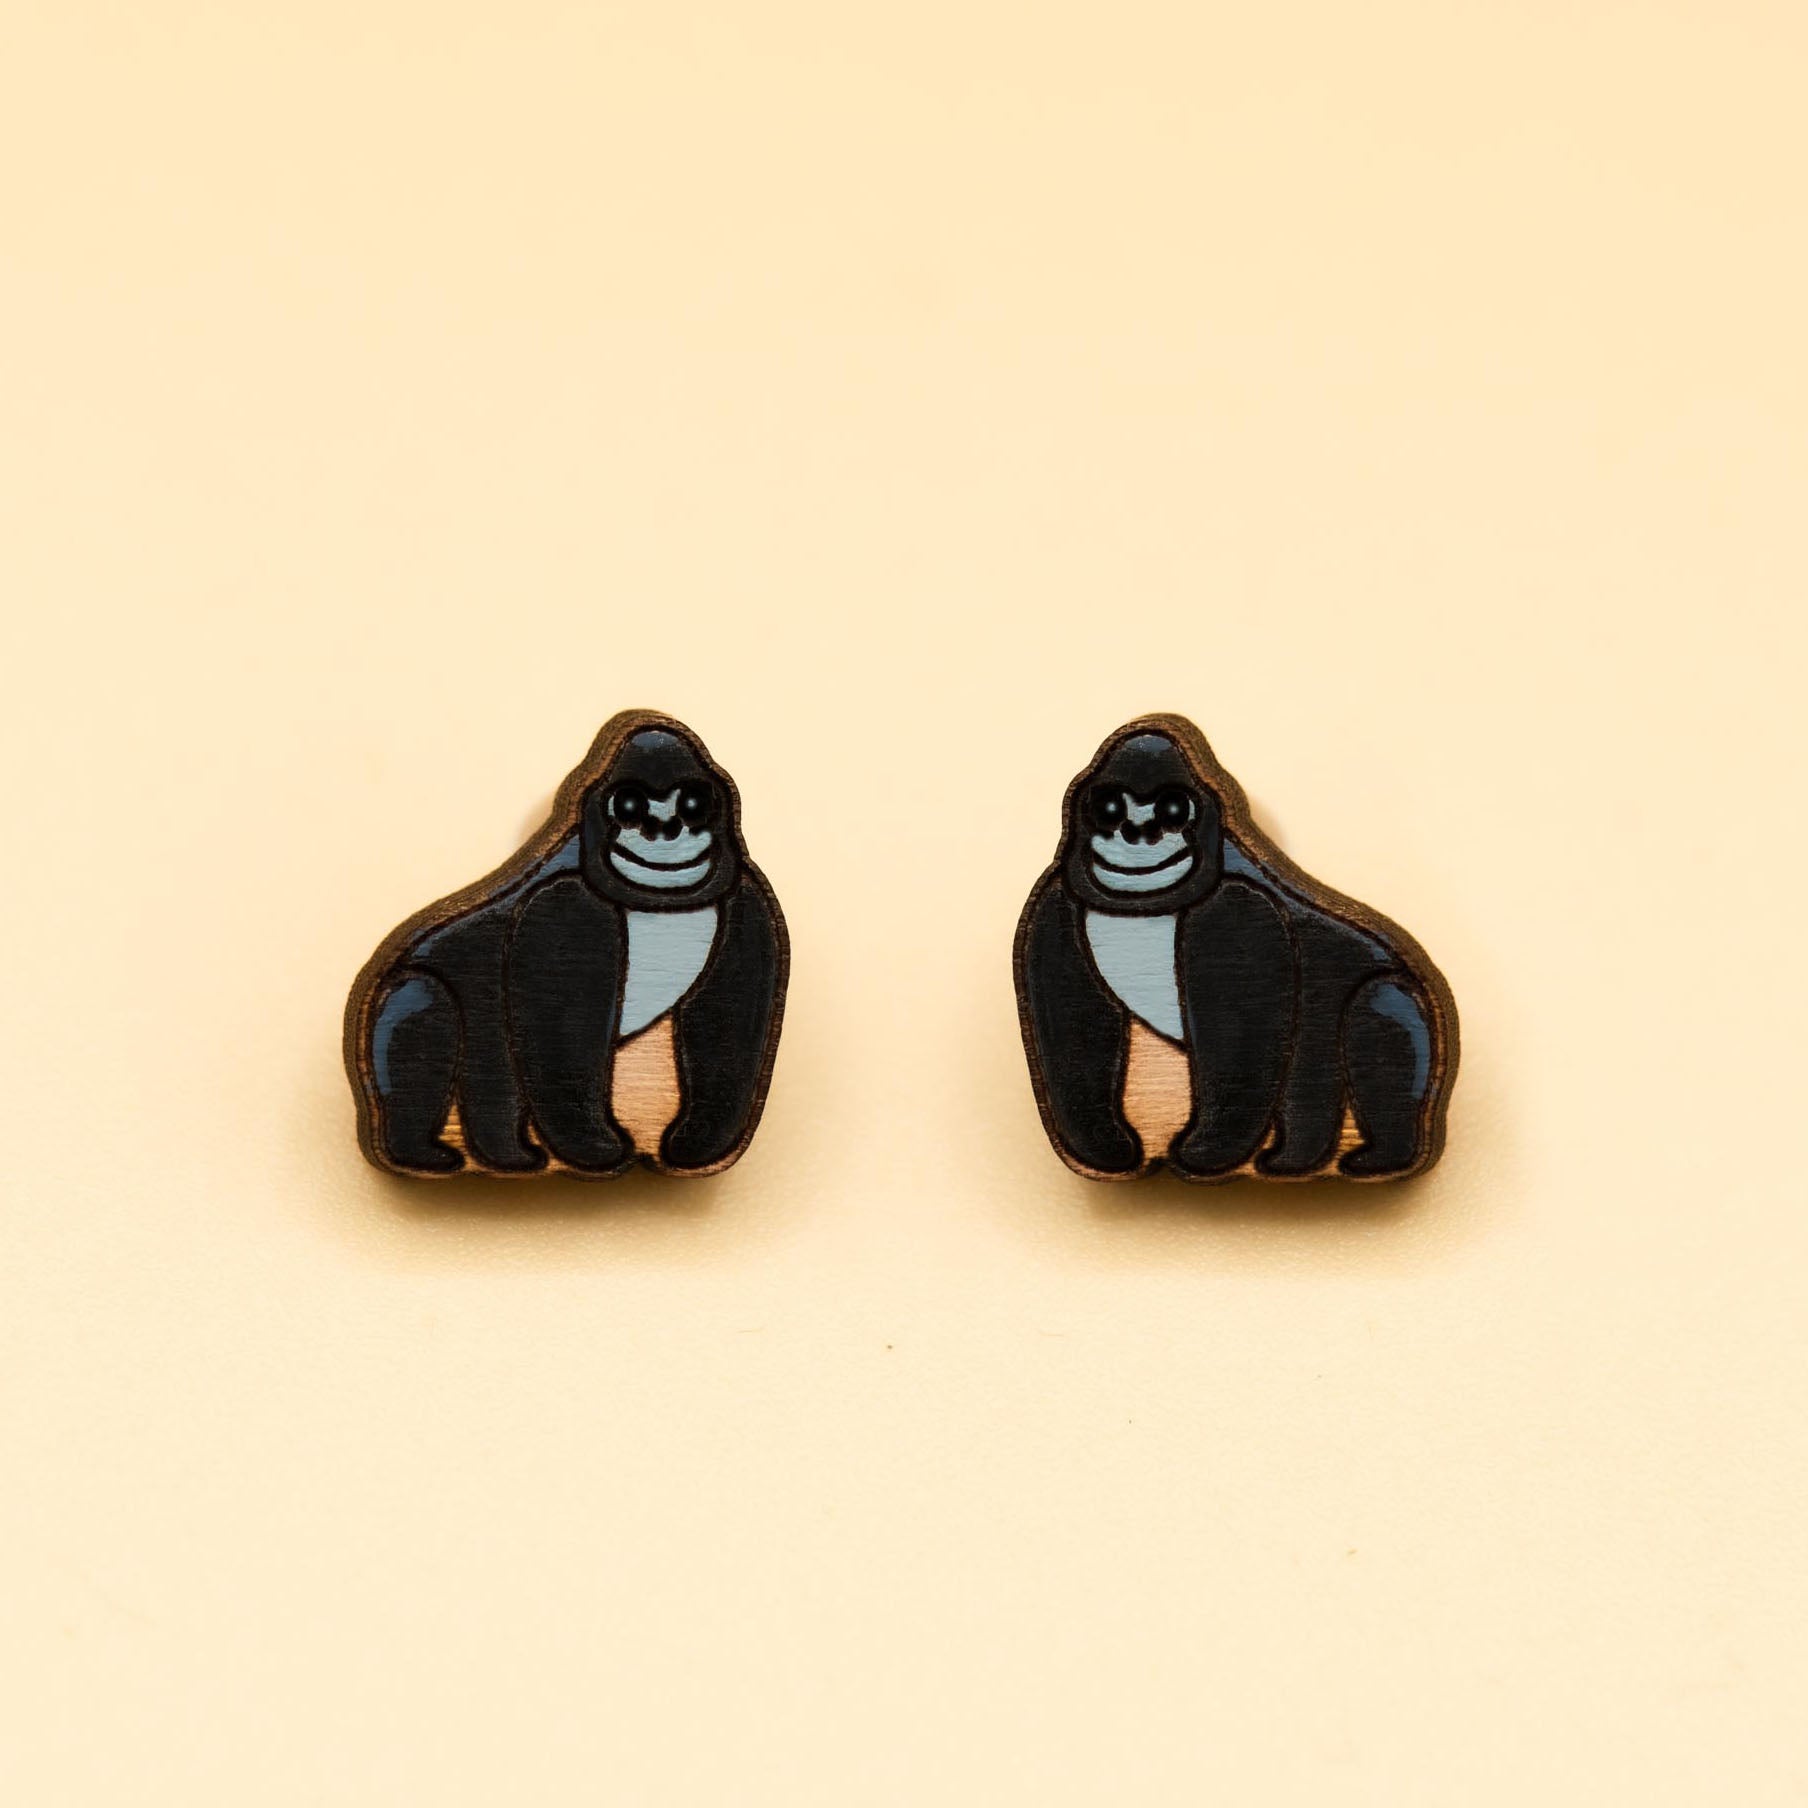 Hand-painted Silverback Gorilla Wooden Earrings - PEL10275